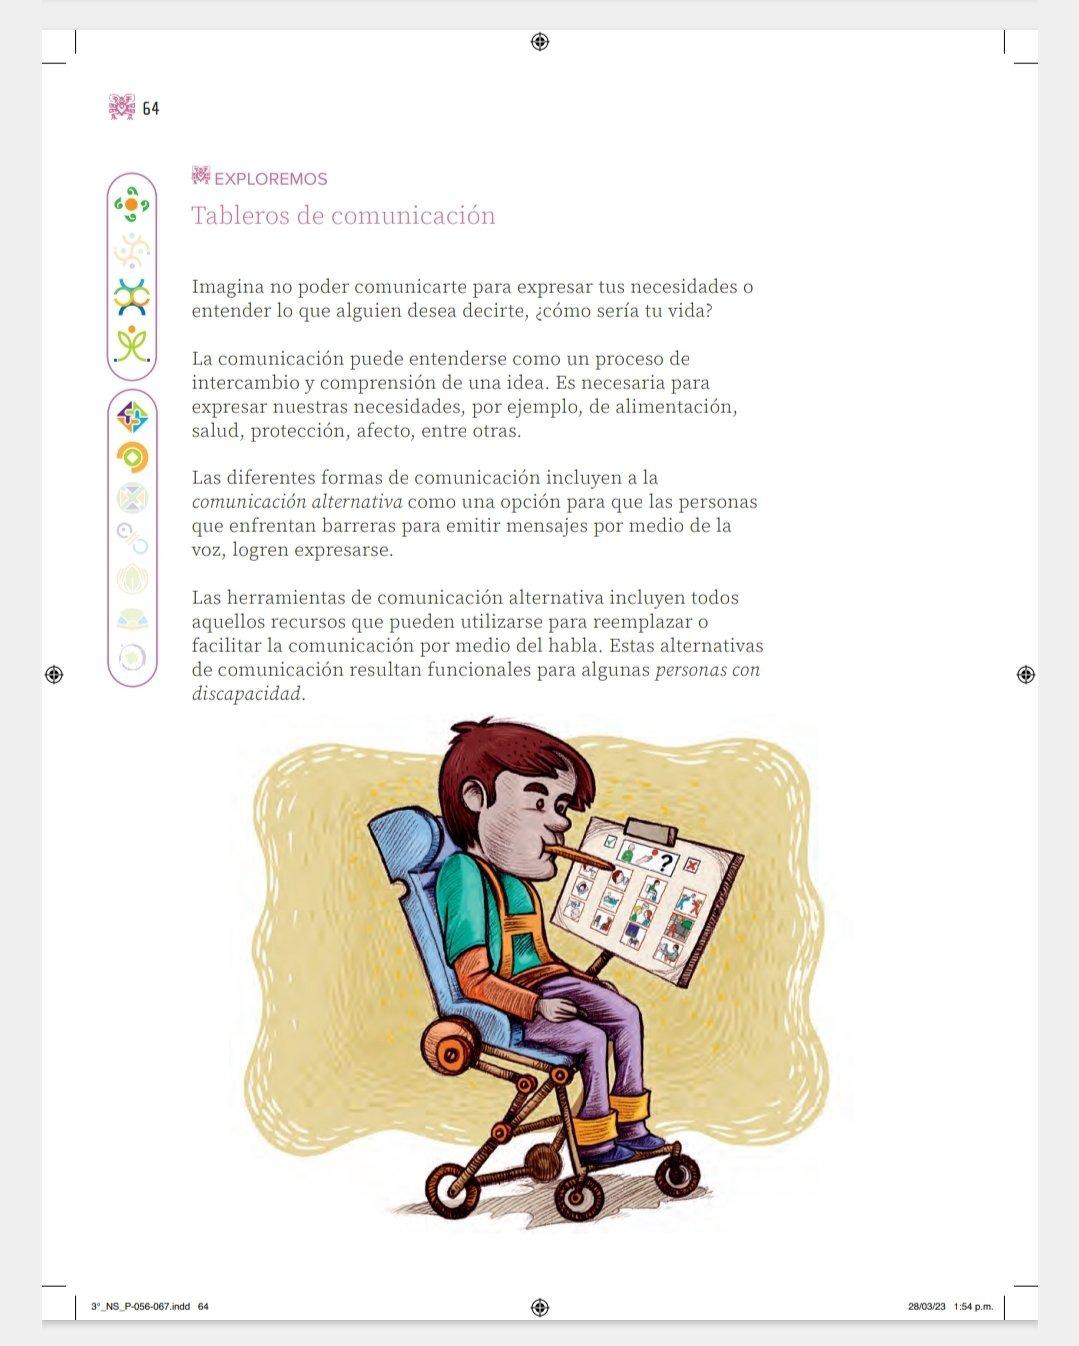 $!Ito Contreras, el artista gráfico sinaloense que tiene una portada en los nuevos libros de texto